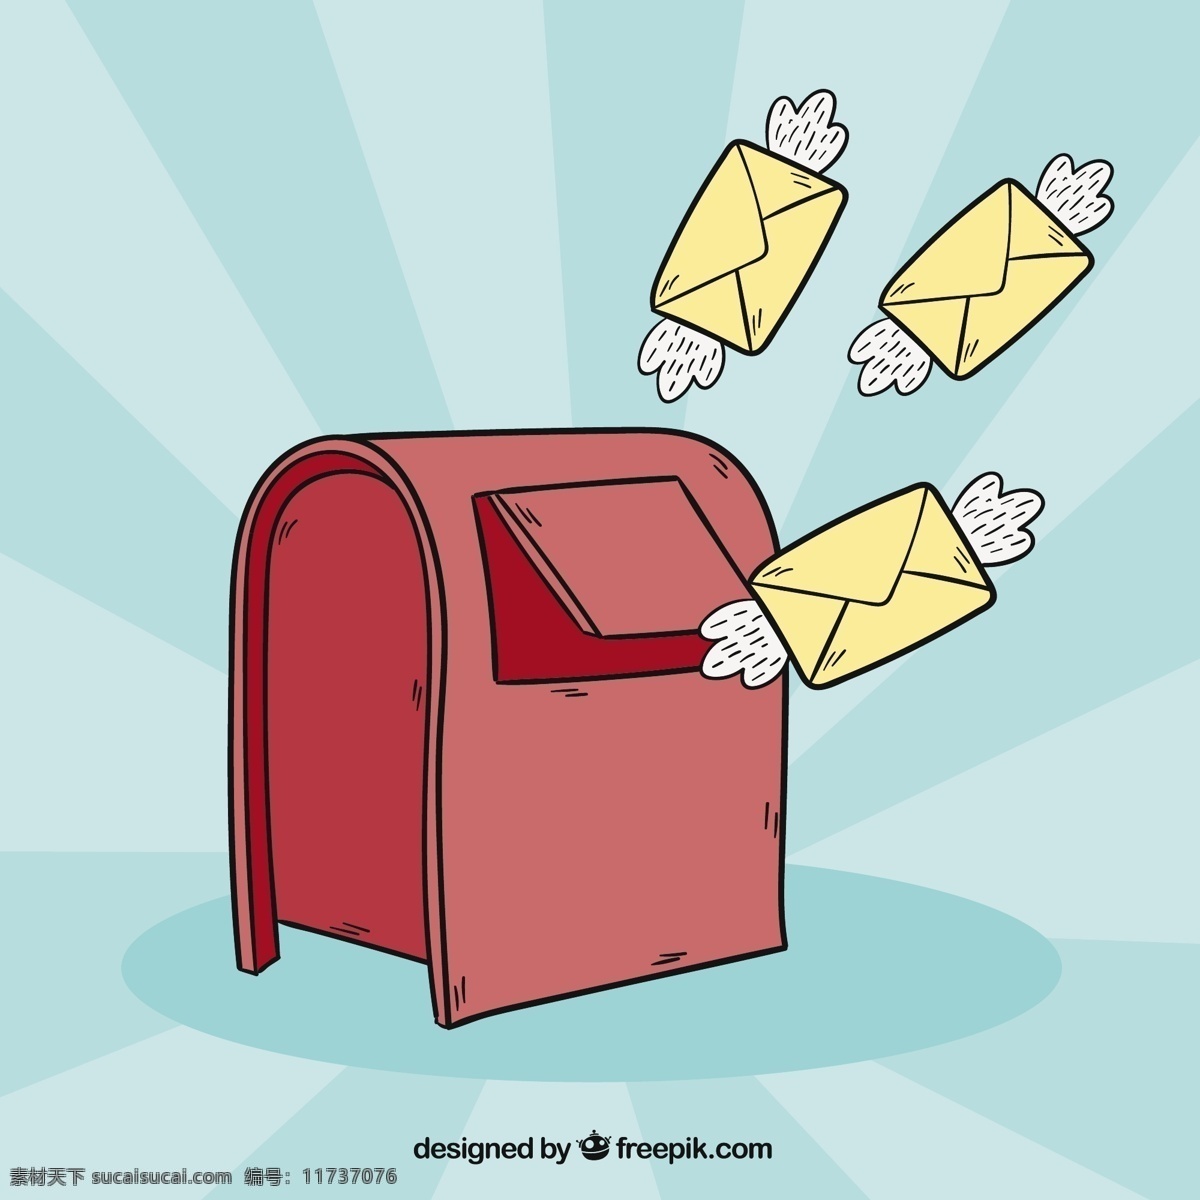 红色 邮箱 背景 带有 手绘 翅膀 信封 手 盒子 递送 电子邮件 通信 绘图 邮寄 粗略 草图 发送